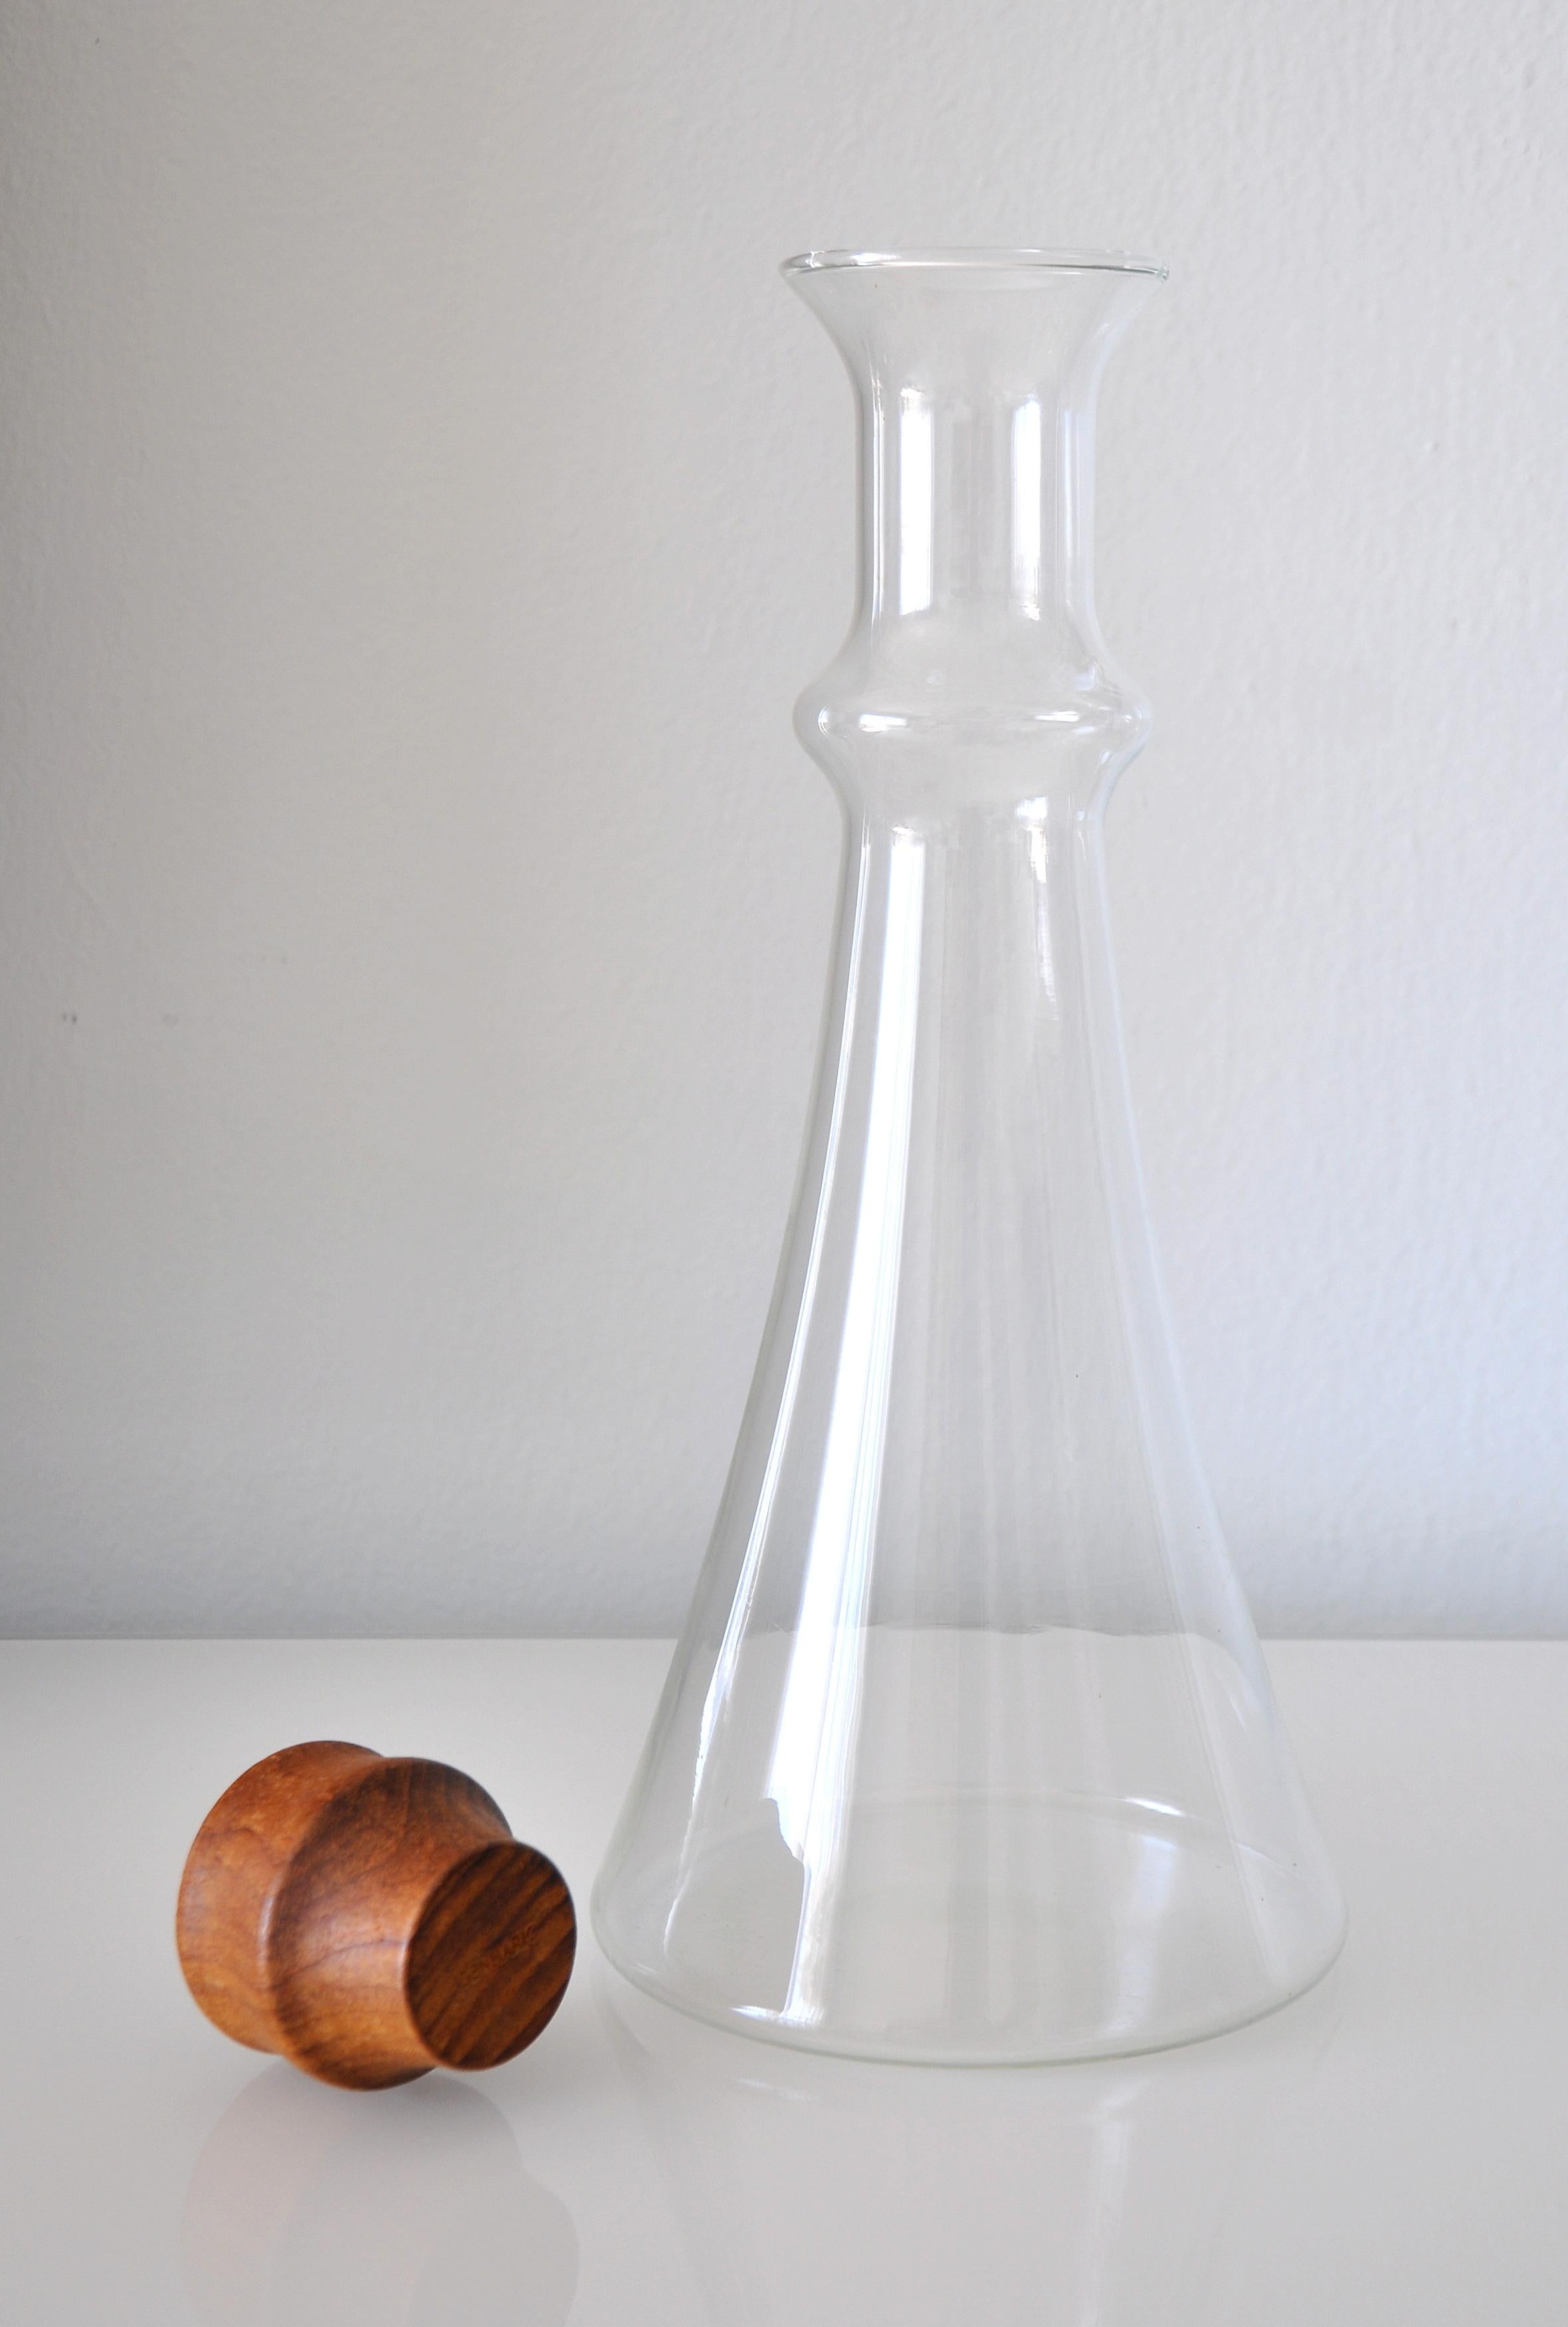 Fabriqué au Danemark. Carafe en verre vintage conçue par Gunnar Cyrén, vers 1980. Ce grand pichet en forme de gobelet avec un bouchon en teck sculpté est une façon élégante de servir du vin ou de l'eau. La carafe contient 1,5 litre.